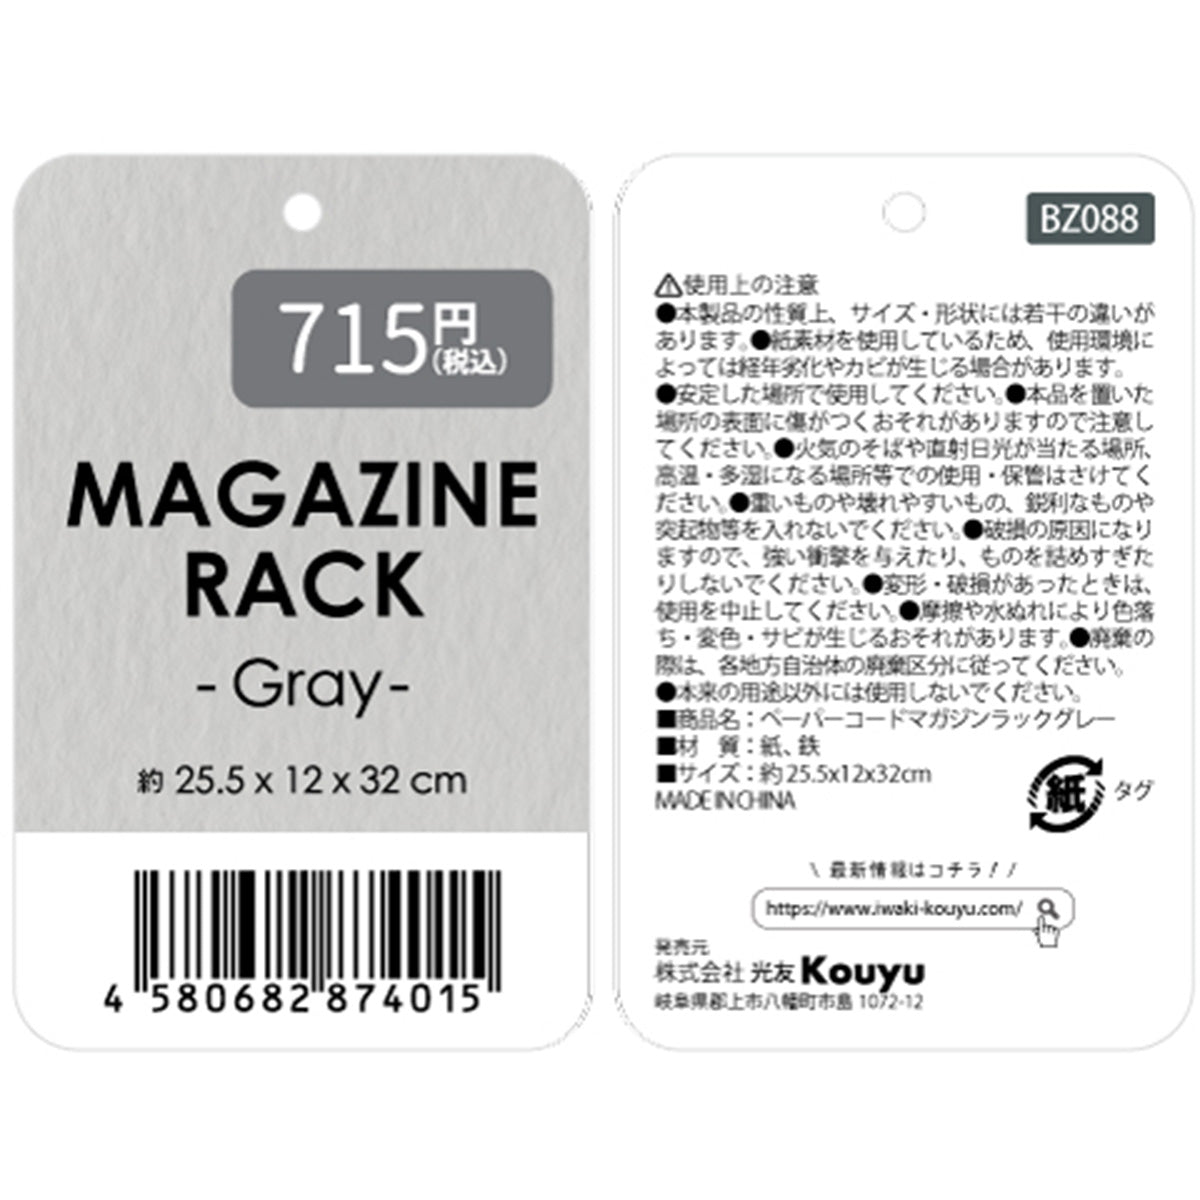 マガジンラック 雑誌ラック ペーパーコードマガジンラックグレー  約25.5x12x32cm 354899